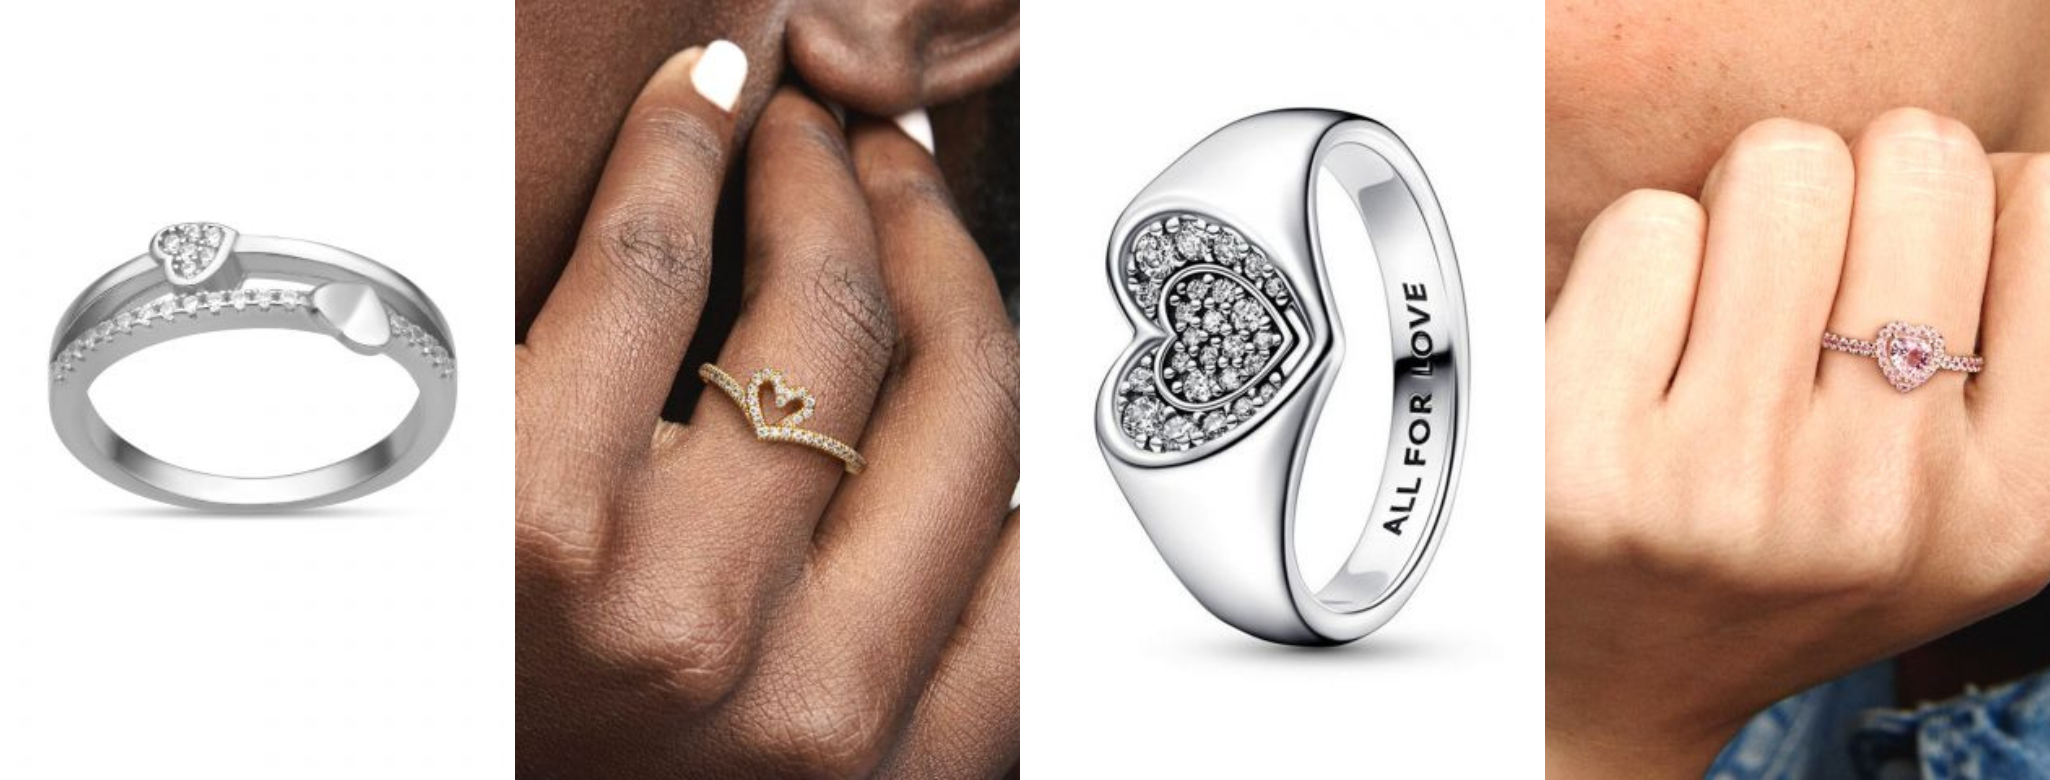 Valentin napi ajándékok nőknek - gyűrűk